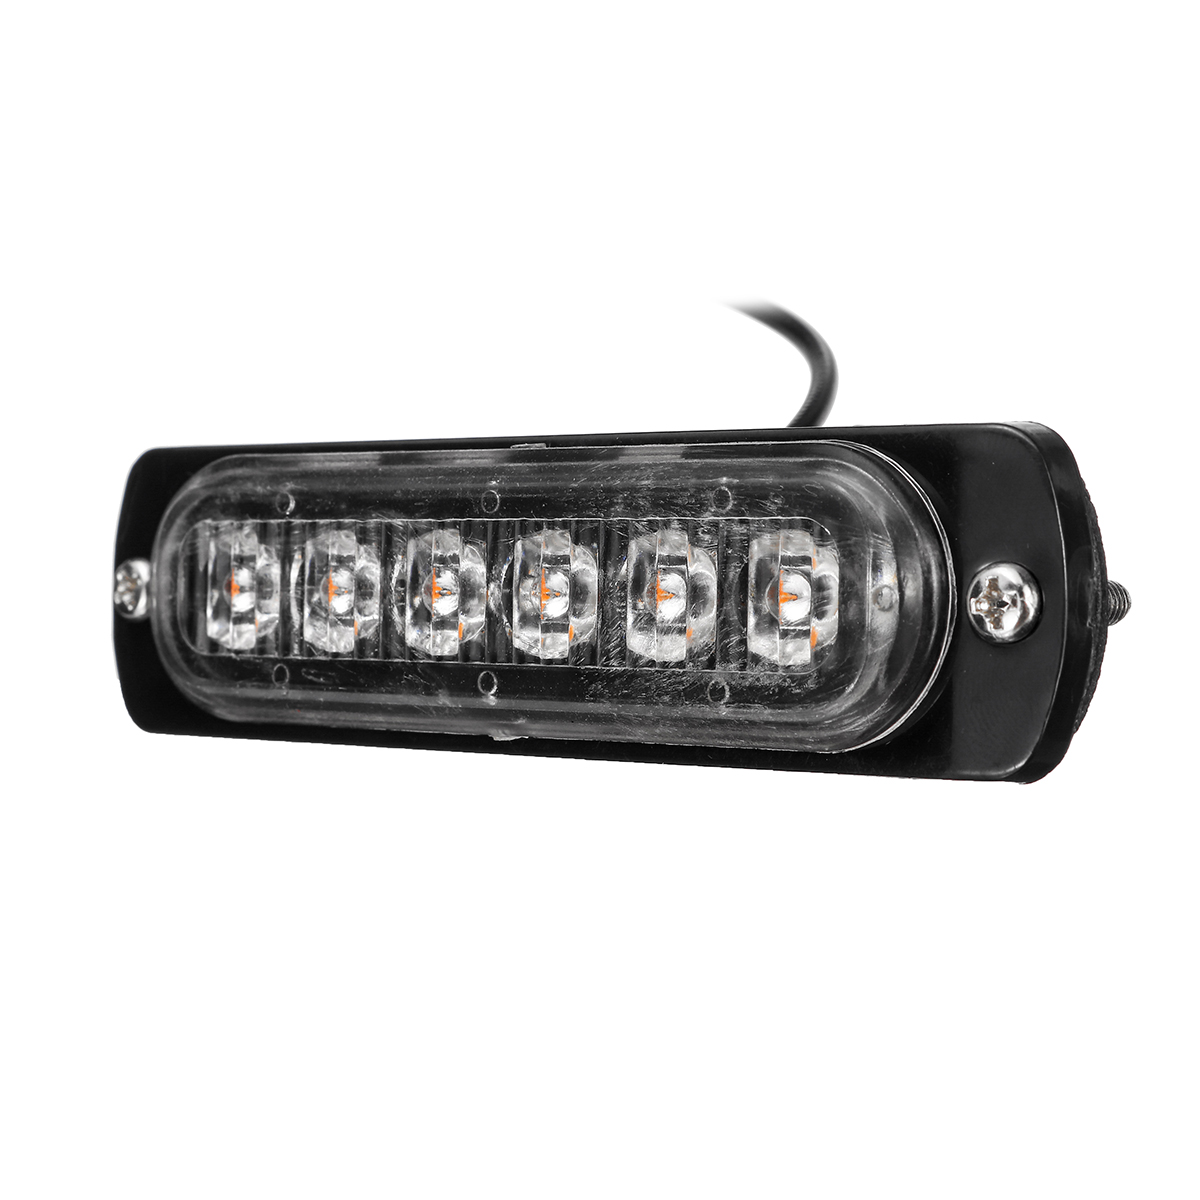 12V 6LED Car Trailer Side Lights Stop Brake Indicator Lamps for Truck Caravan